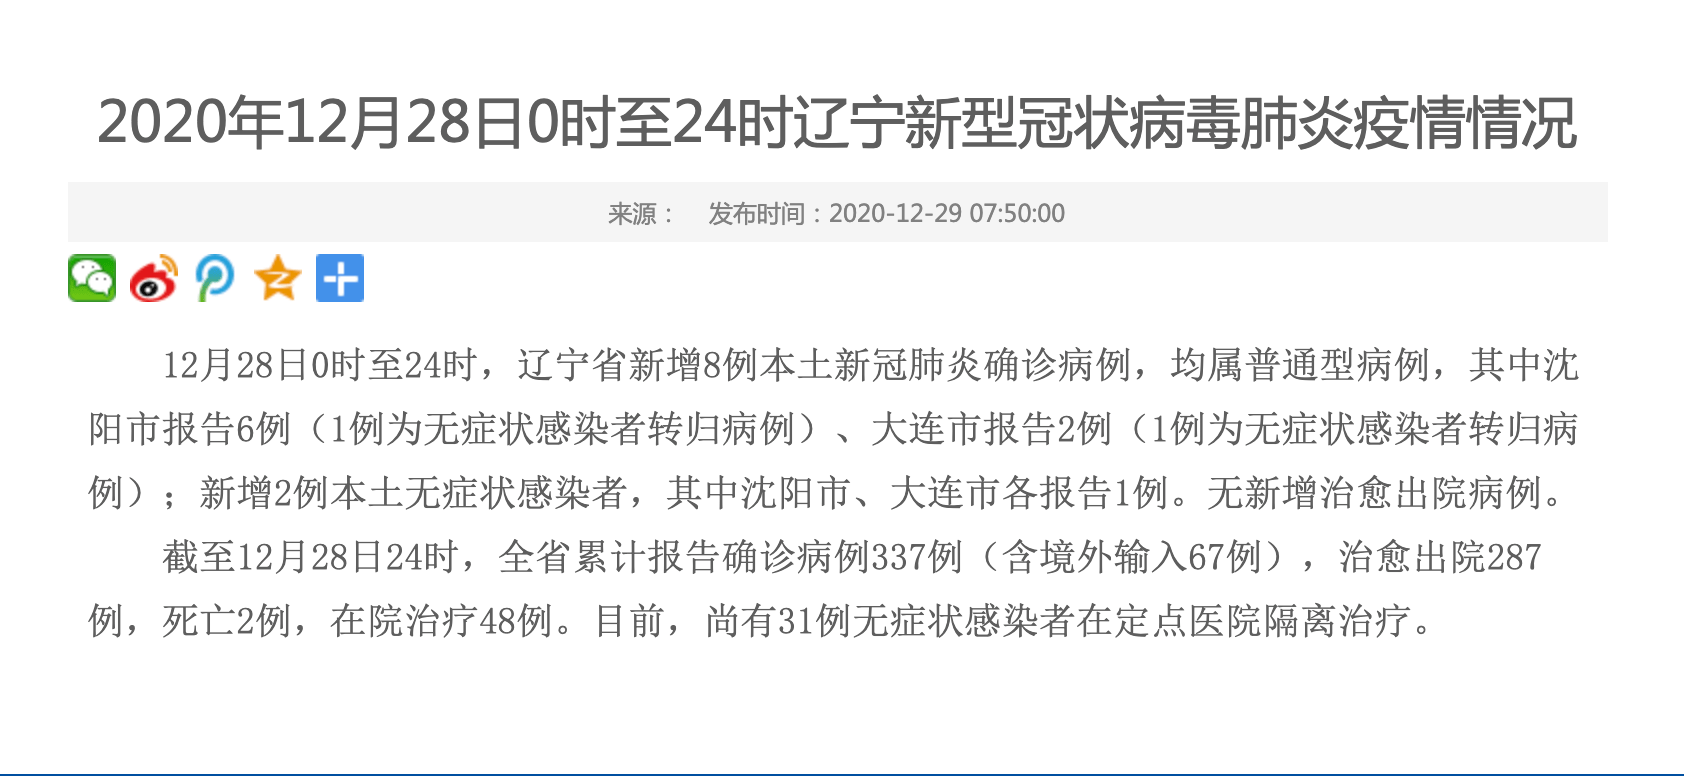 辽宁省新增8例本土新冠肺炎确诊病例,其中沈阳市报告